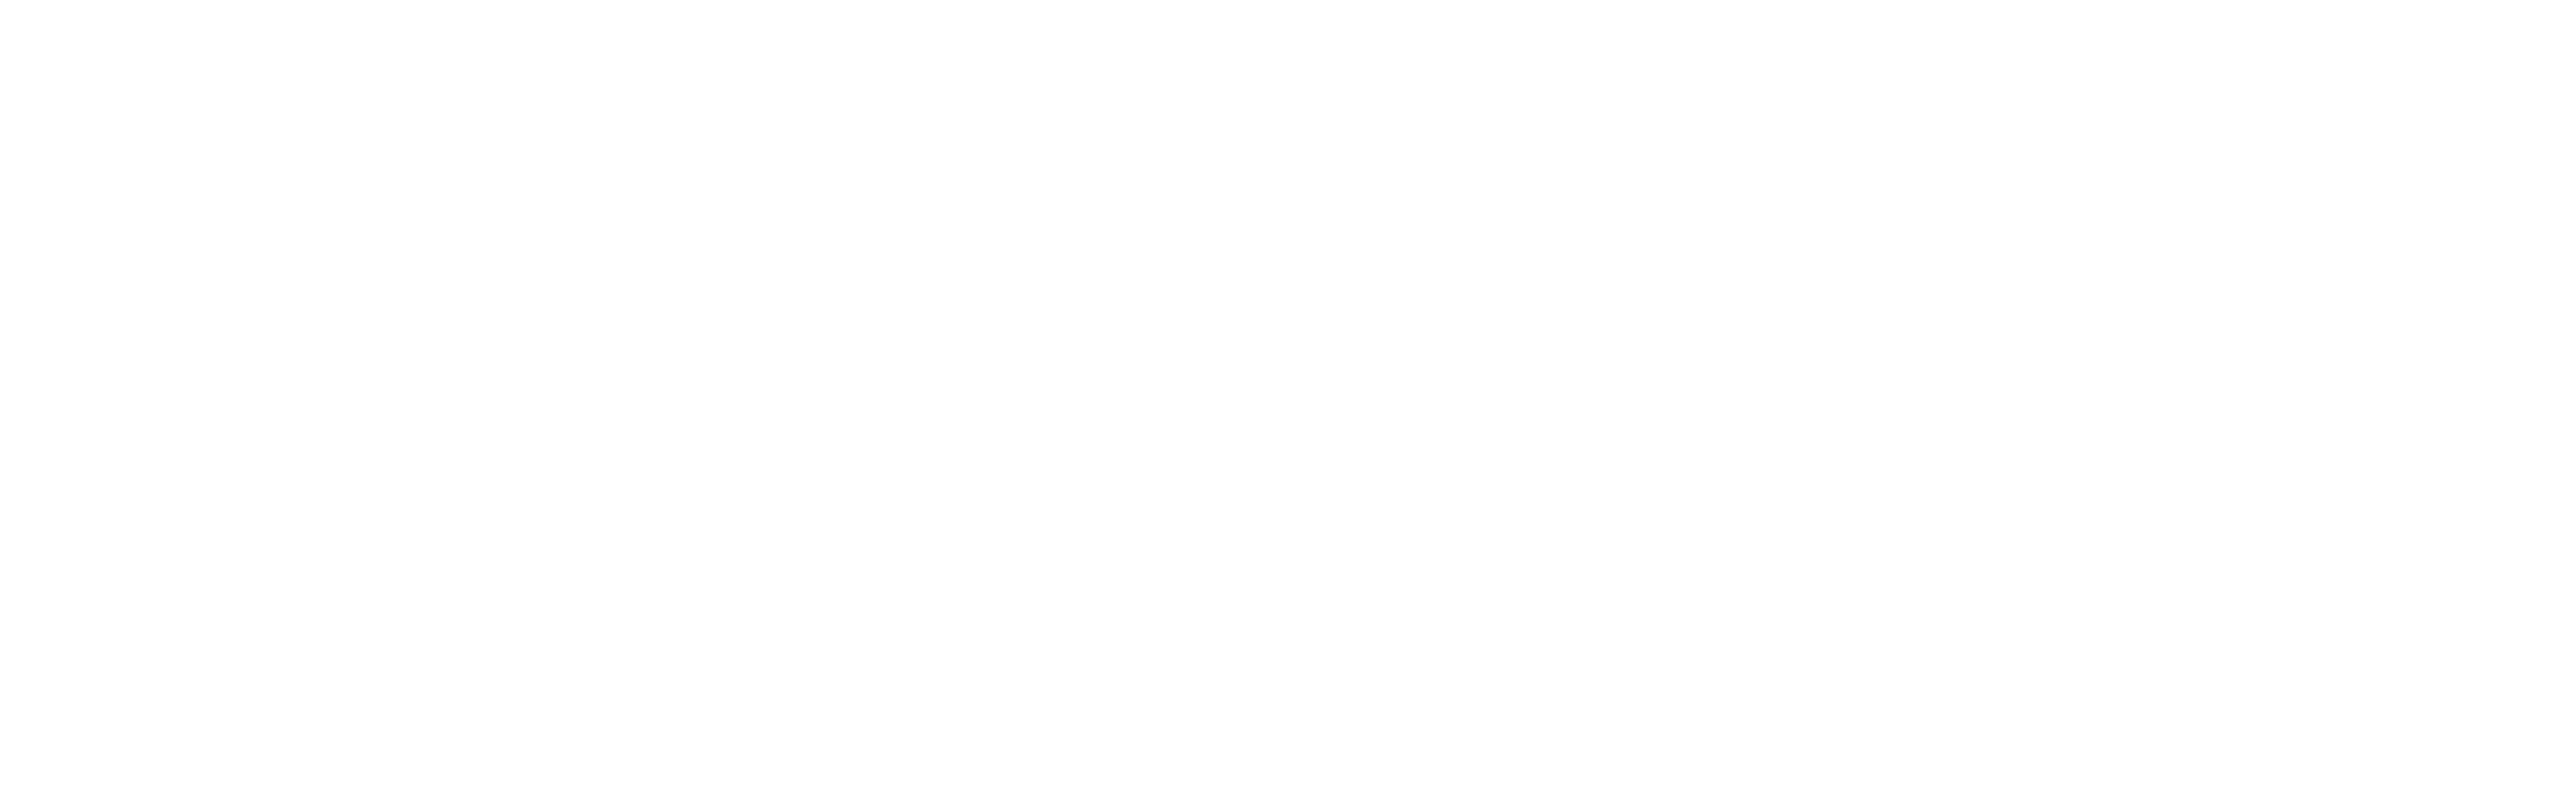 Easyfix